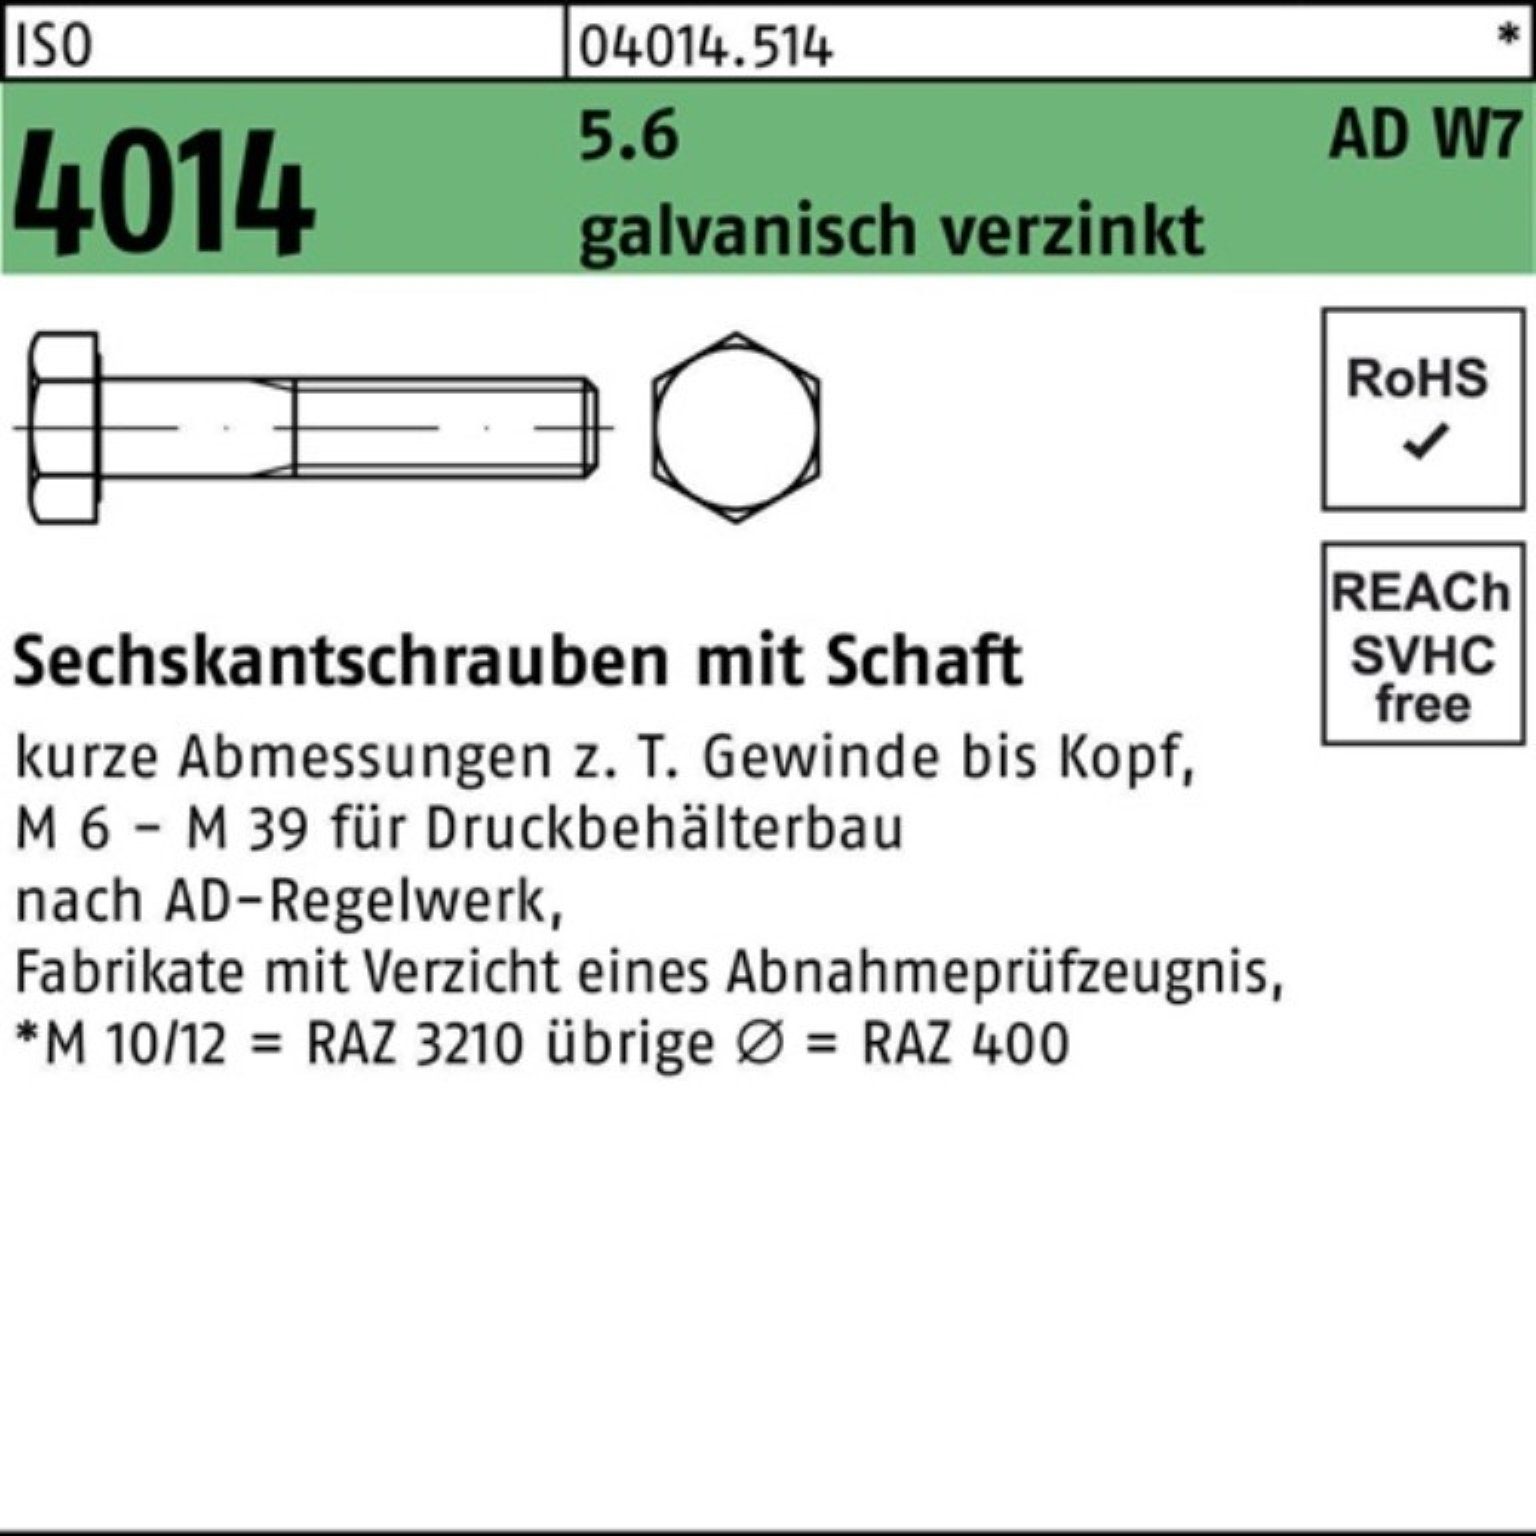 Günstig im Online-Verkauf Bufab Sechskantschraube 100er 4014 W7 M30x ISO galv.verz Sechskantschraube Pack Schaft 5.6 140